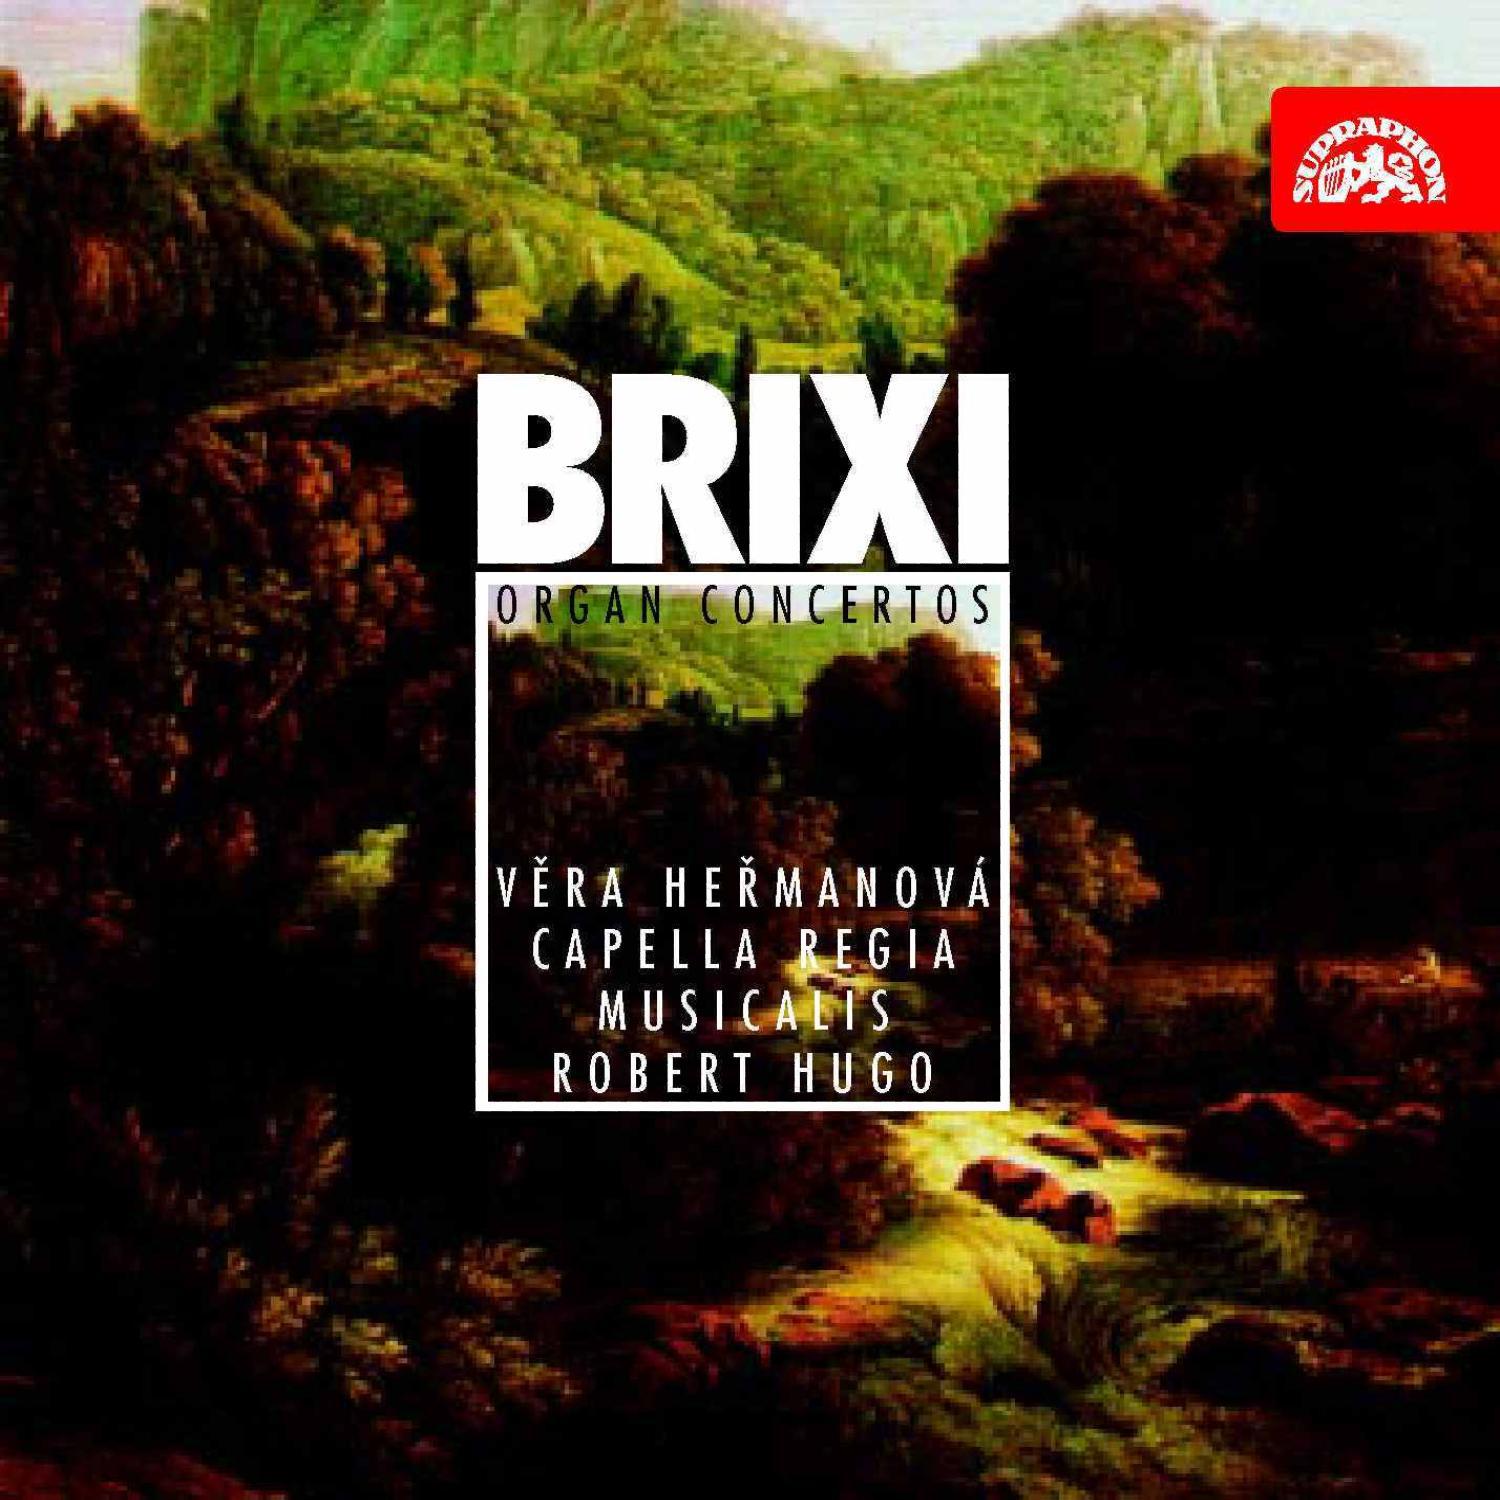 František Xaver Brixi - Concerto Ut maggiore (in C major): I. Allegro moderato